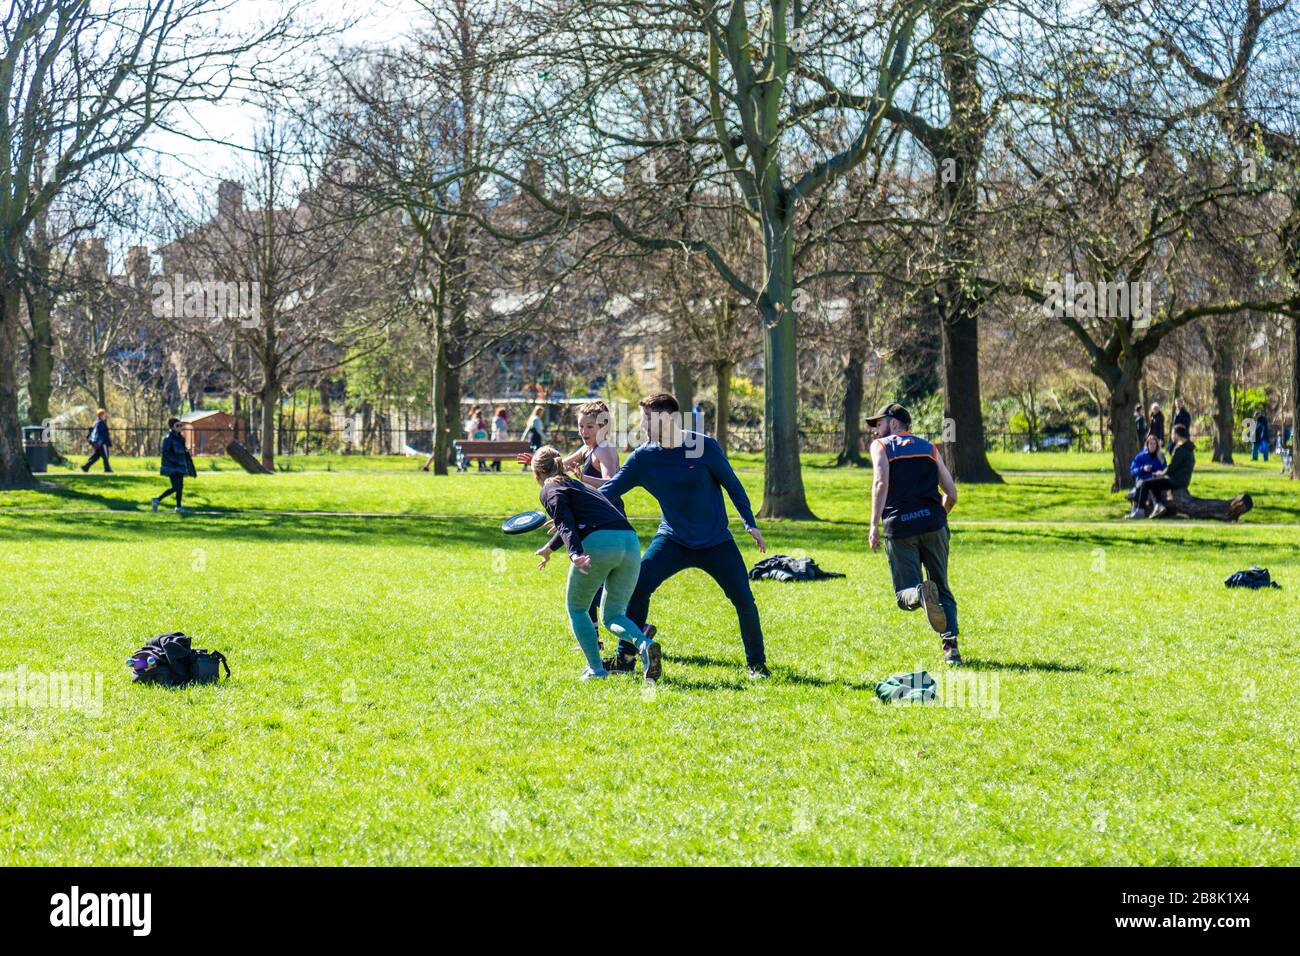 22 mars 2020 - Londres, Royaume-Uni - pandémie mondiale de coronavirus, de grands groupes de personnes visitant le parc Victoria malgré le gouvernement exhortant les gens à rester à la maison et à pratiquer la distanciation sociale pour empêcher la propagation du coronavirus Covid-19, des personnes jouant des frisbee dans le parc Banque D'Images